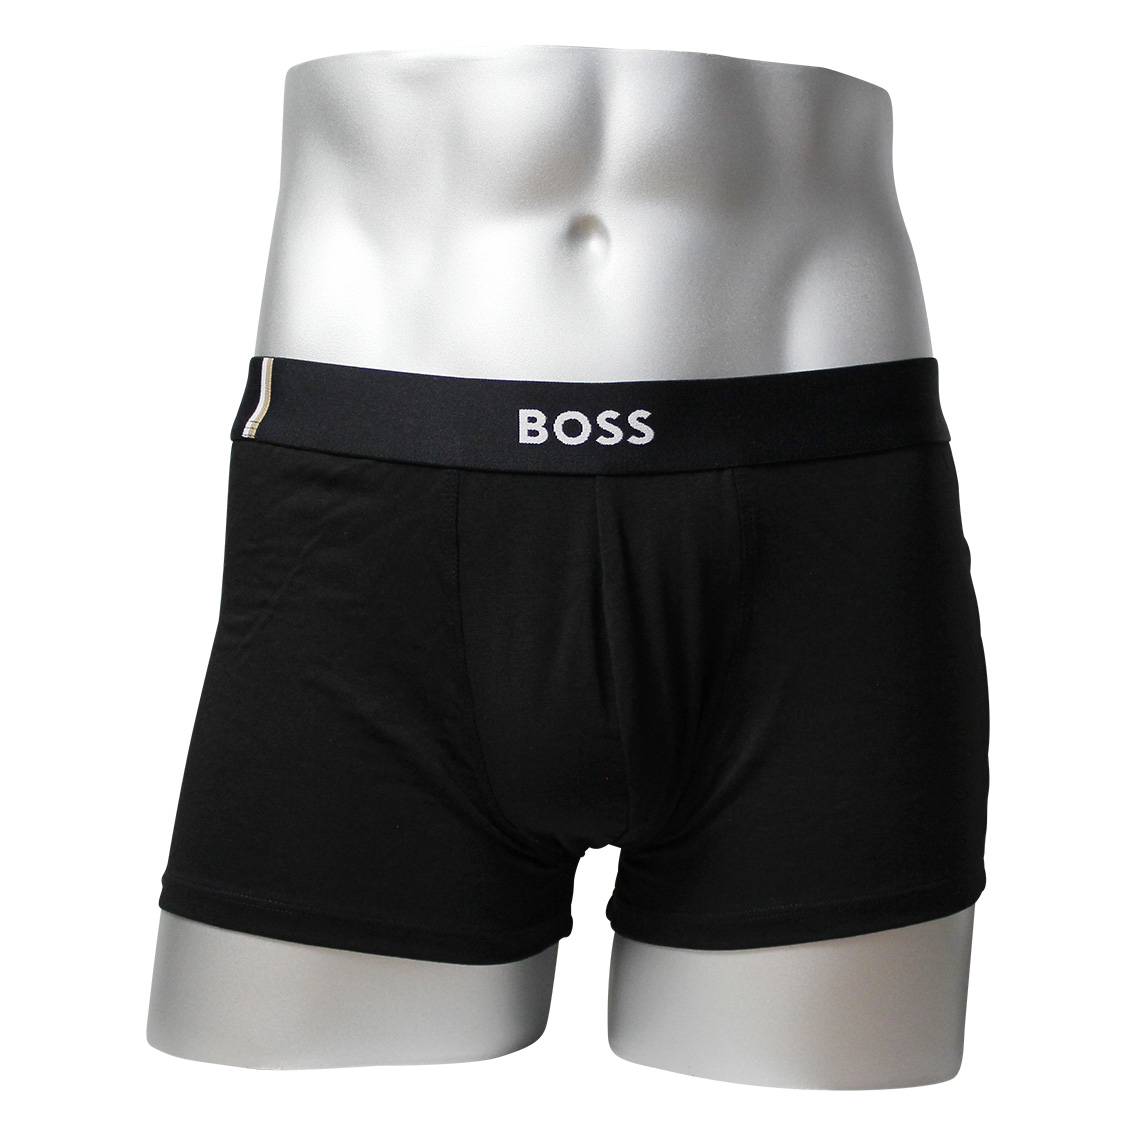 [50491490-001] HUGO BOSS ヒューゴボス ボクサーパンツ メンズ アンダーウェア インナー 男性 下着 ブランド おすすめ 人気 プレゼント